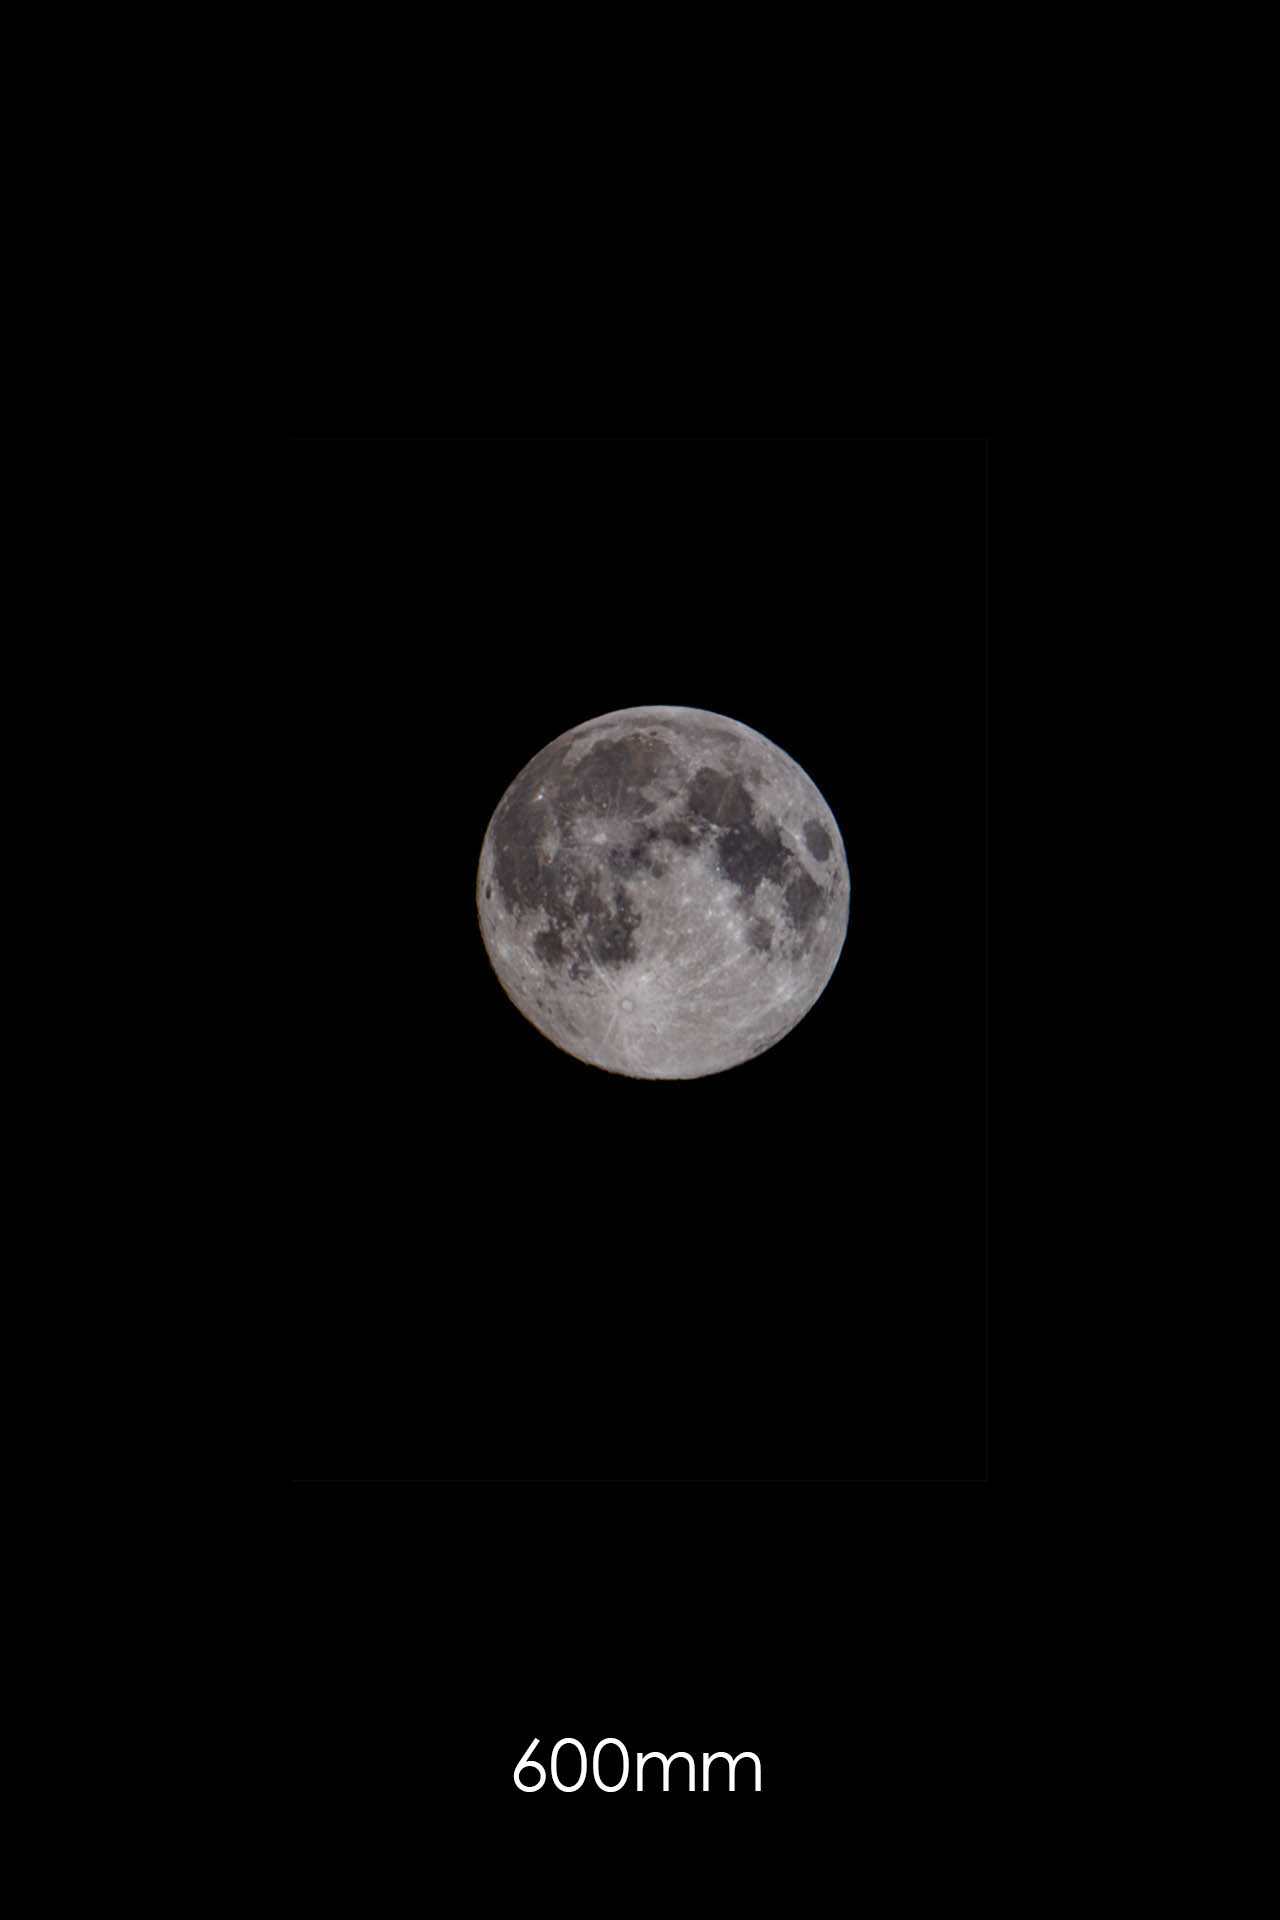 Mond mit 600mm Brennweite fotografiert